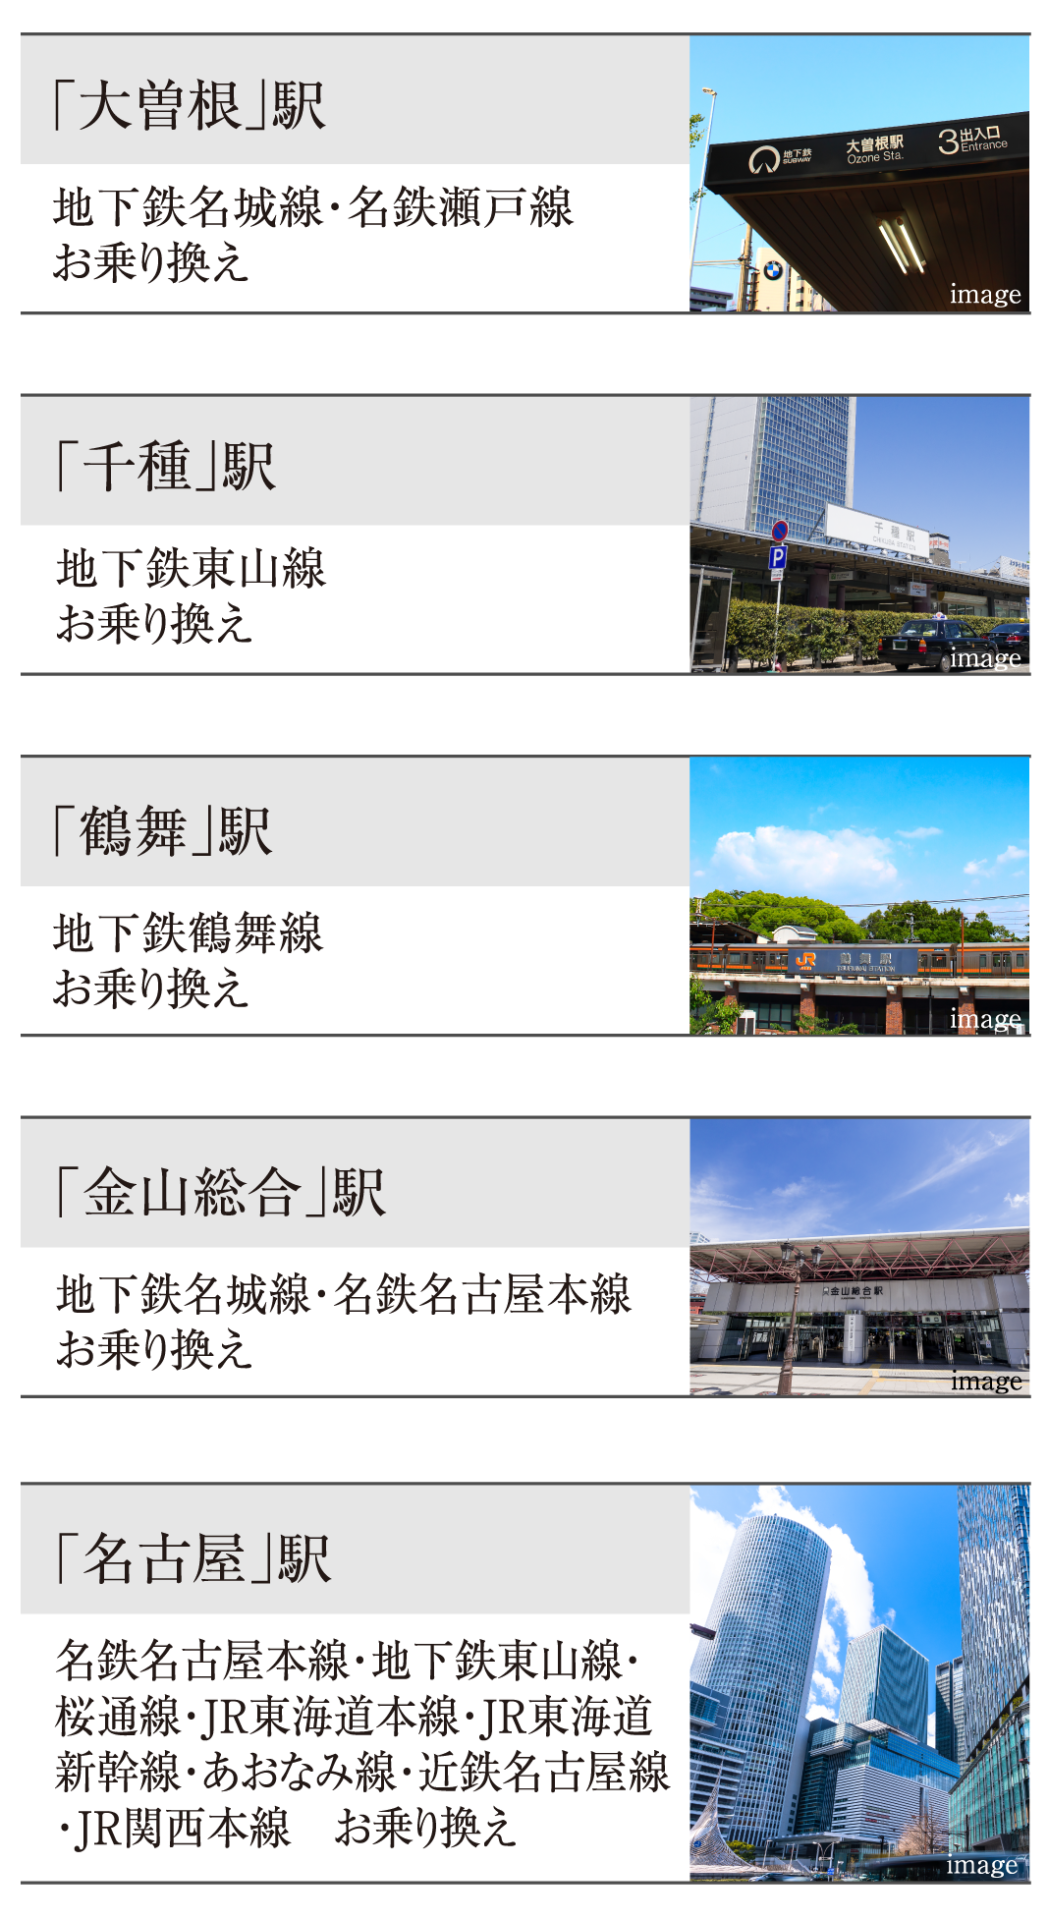 高蔵寺の新築マンション大曽根・千種・鶴舞・金山総合・名古屋駅など乗り換えも便利